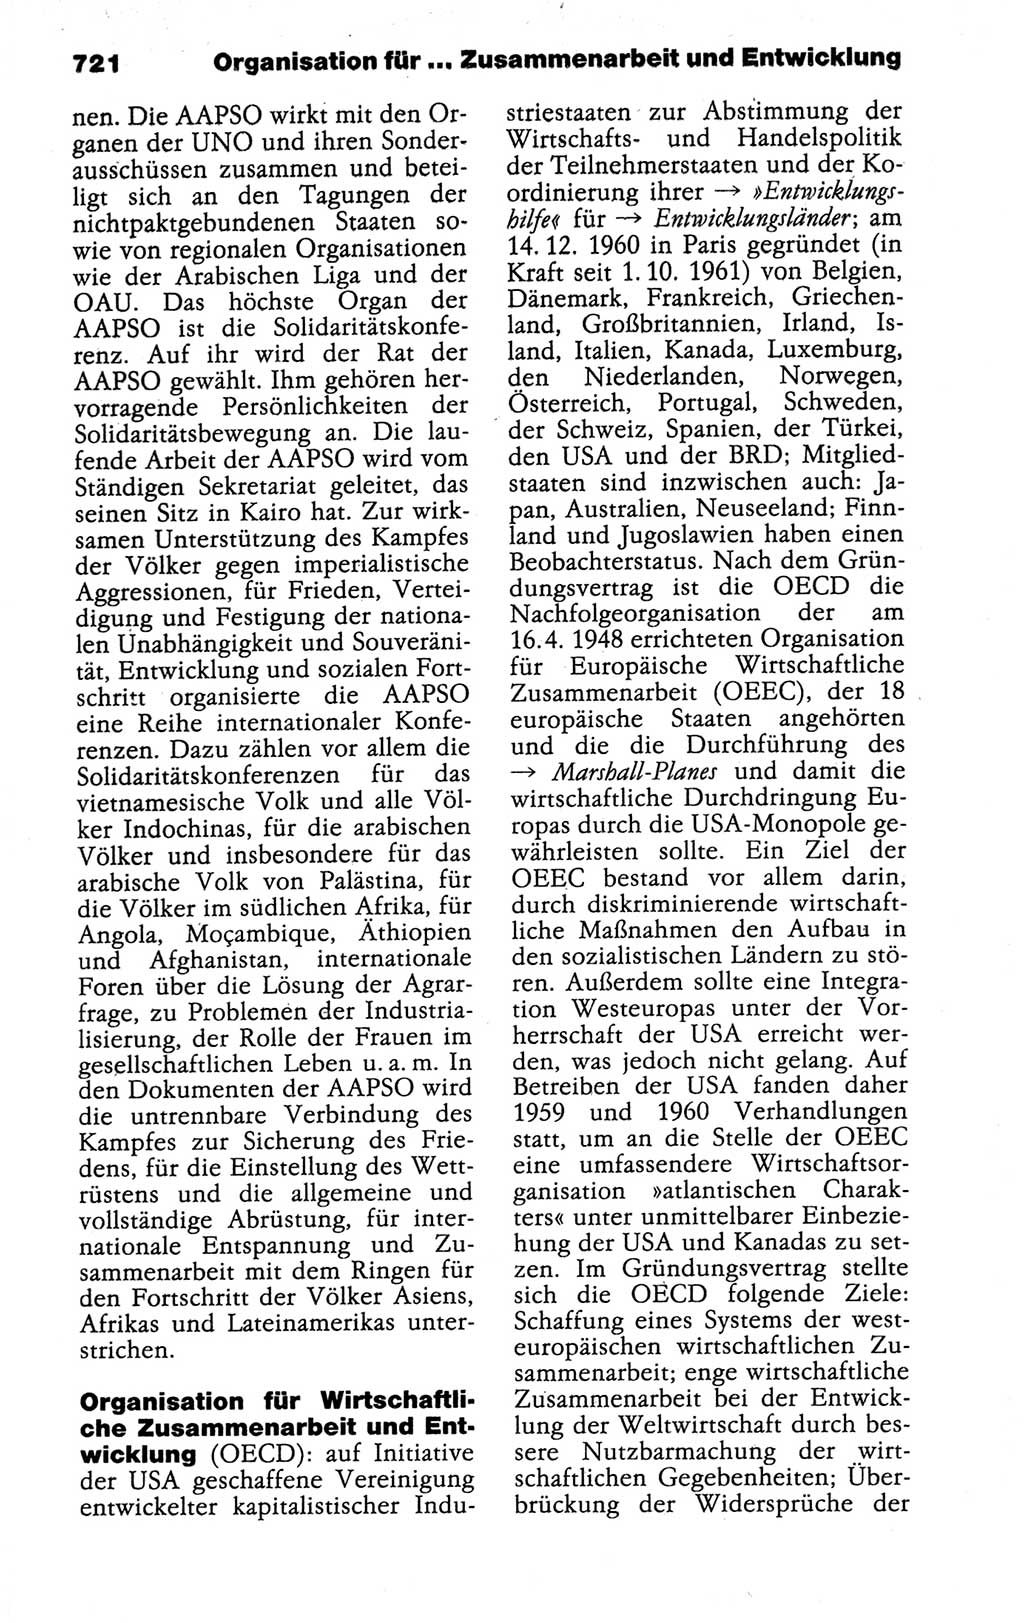 Kleines politisches Wörterbuch [Deutsche Demokratische Republik (DDR)] 1988, Seite 721 (Kl. pol. Wb. DDR 1988, S. 721)